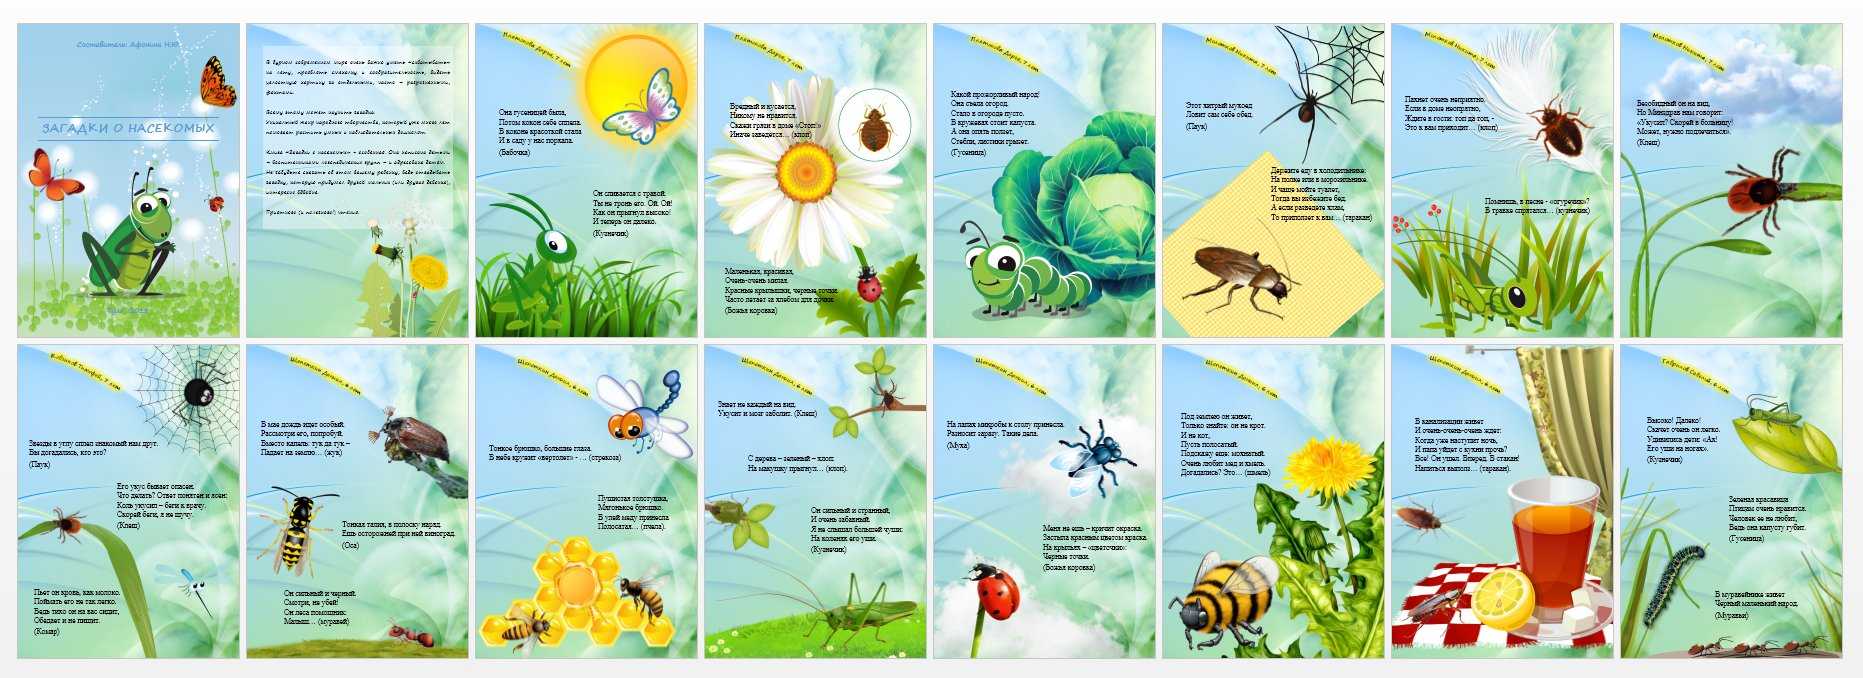 Про насекомых для детей 3 4. Загадки про насекомых для детей 6-7. Загадки про насекомых для детей. Загадки про насекомых для дошкольников. Загадки для детей про насекомых с ответами.